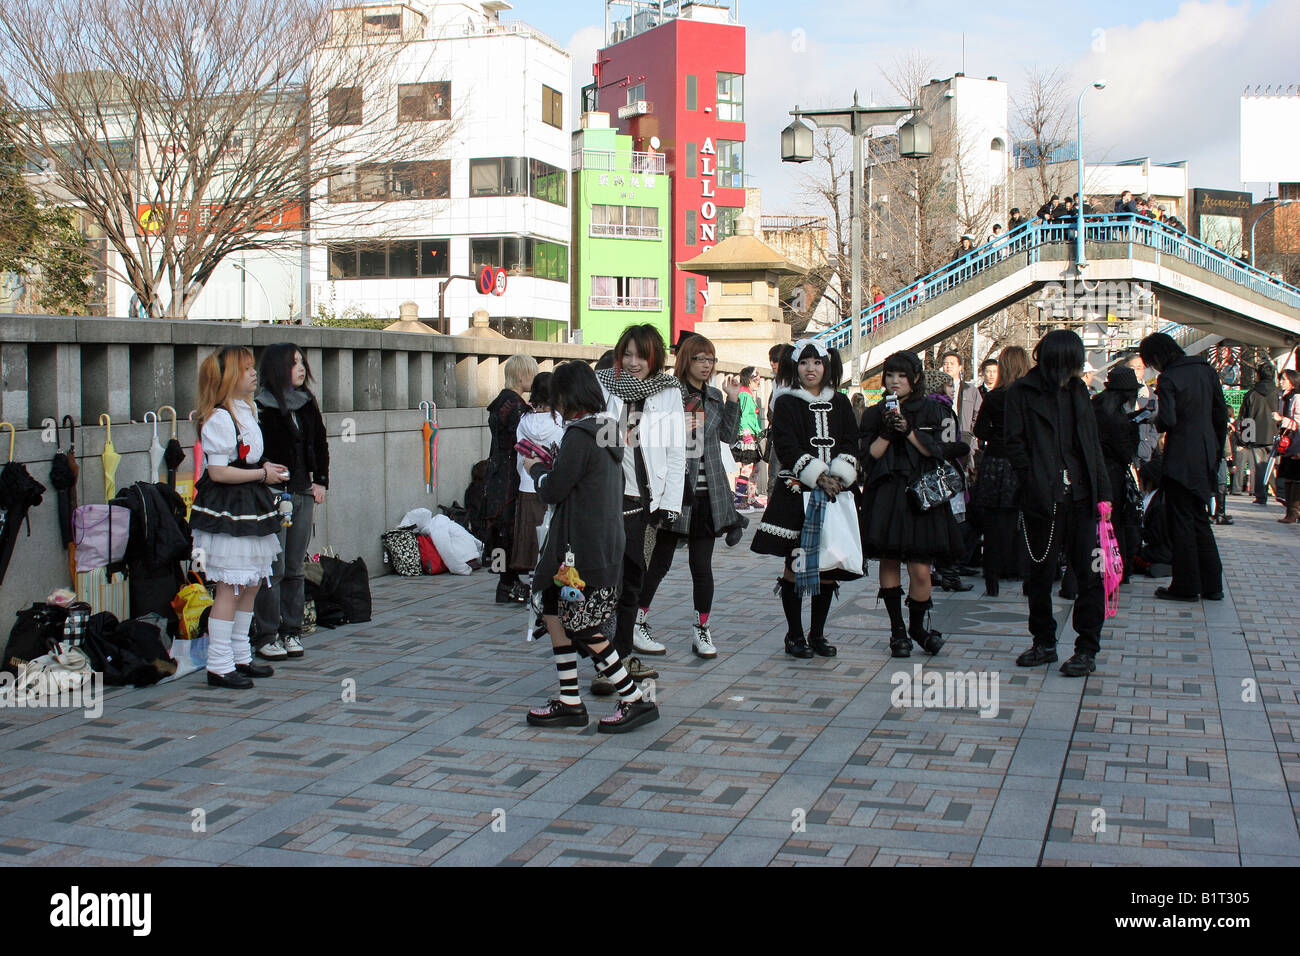 Harajuku Girls street style sur le pont près de la gare de Tokyo Japon Banque D'Images